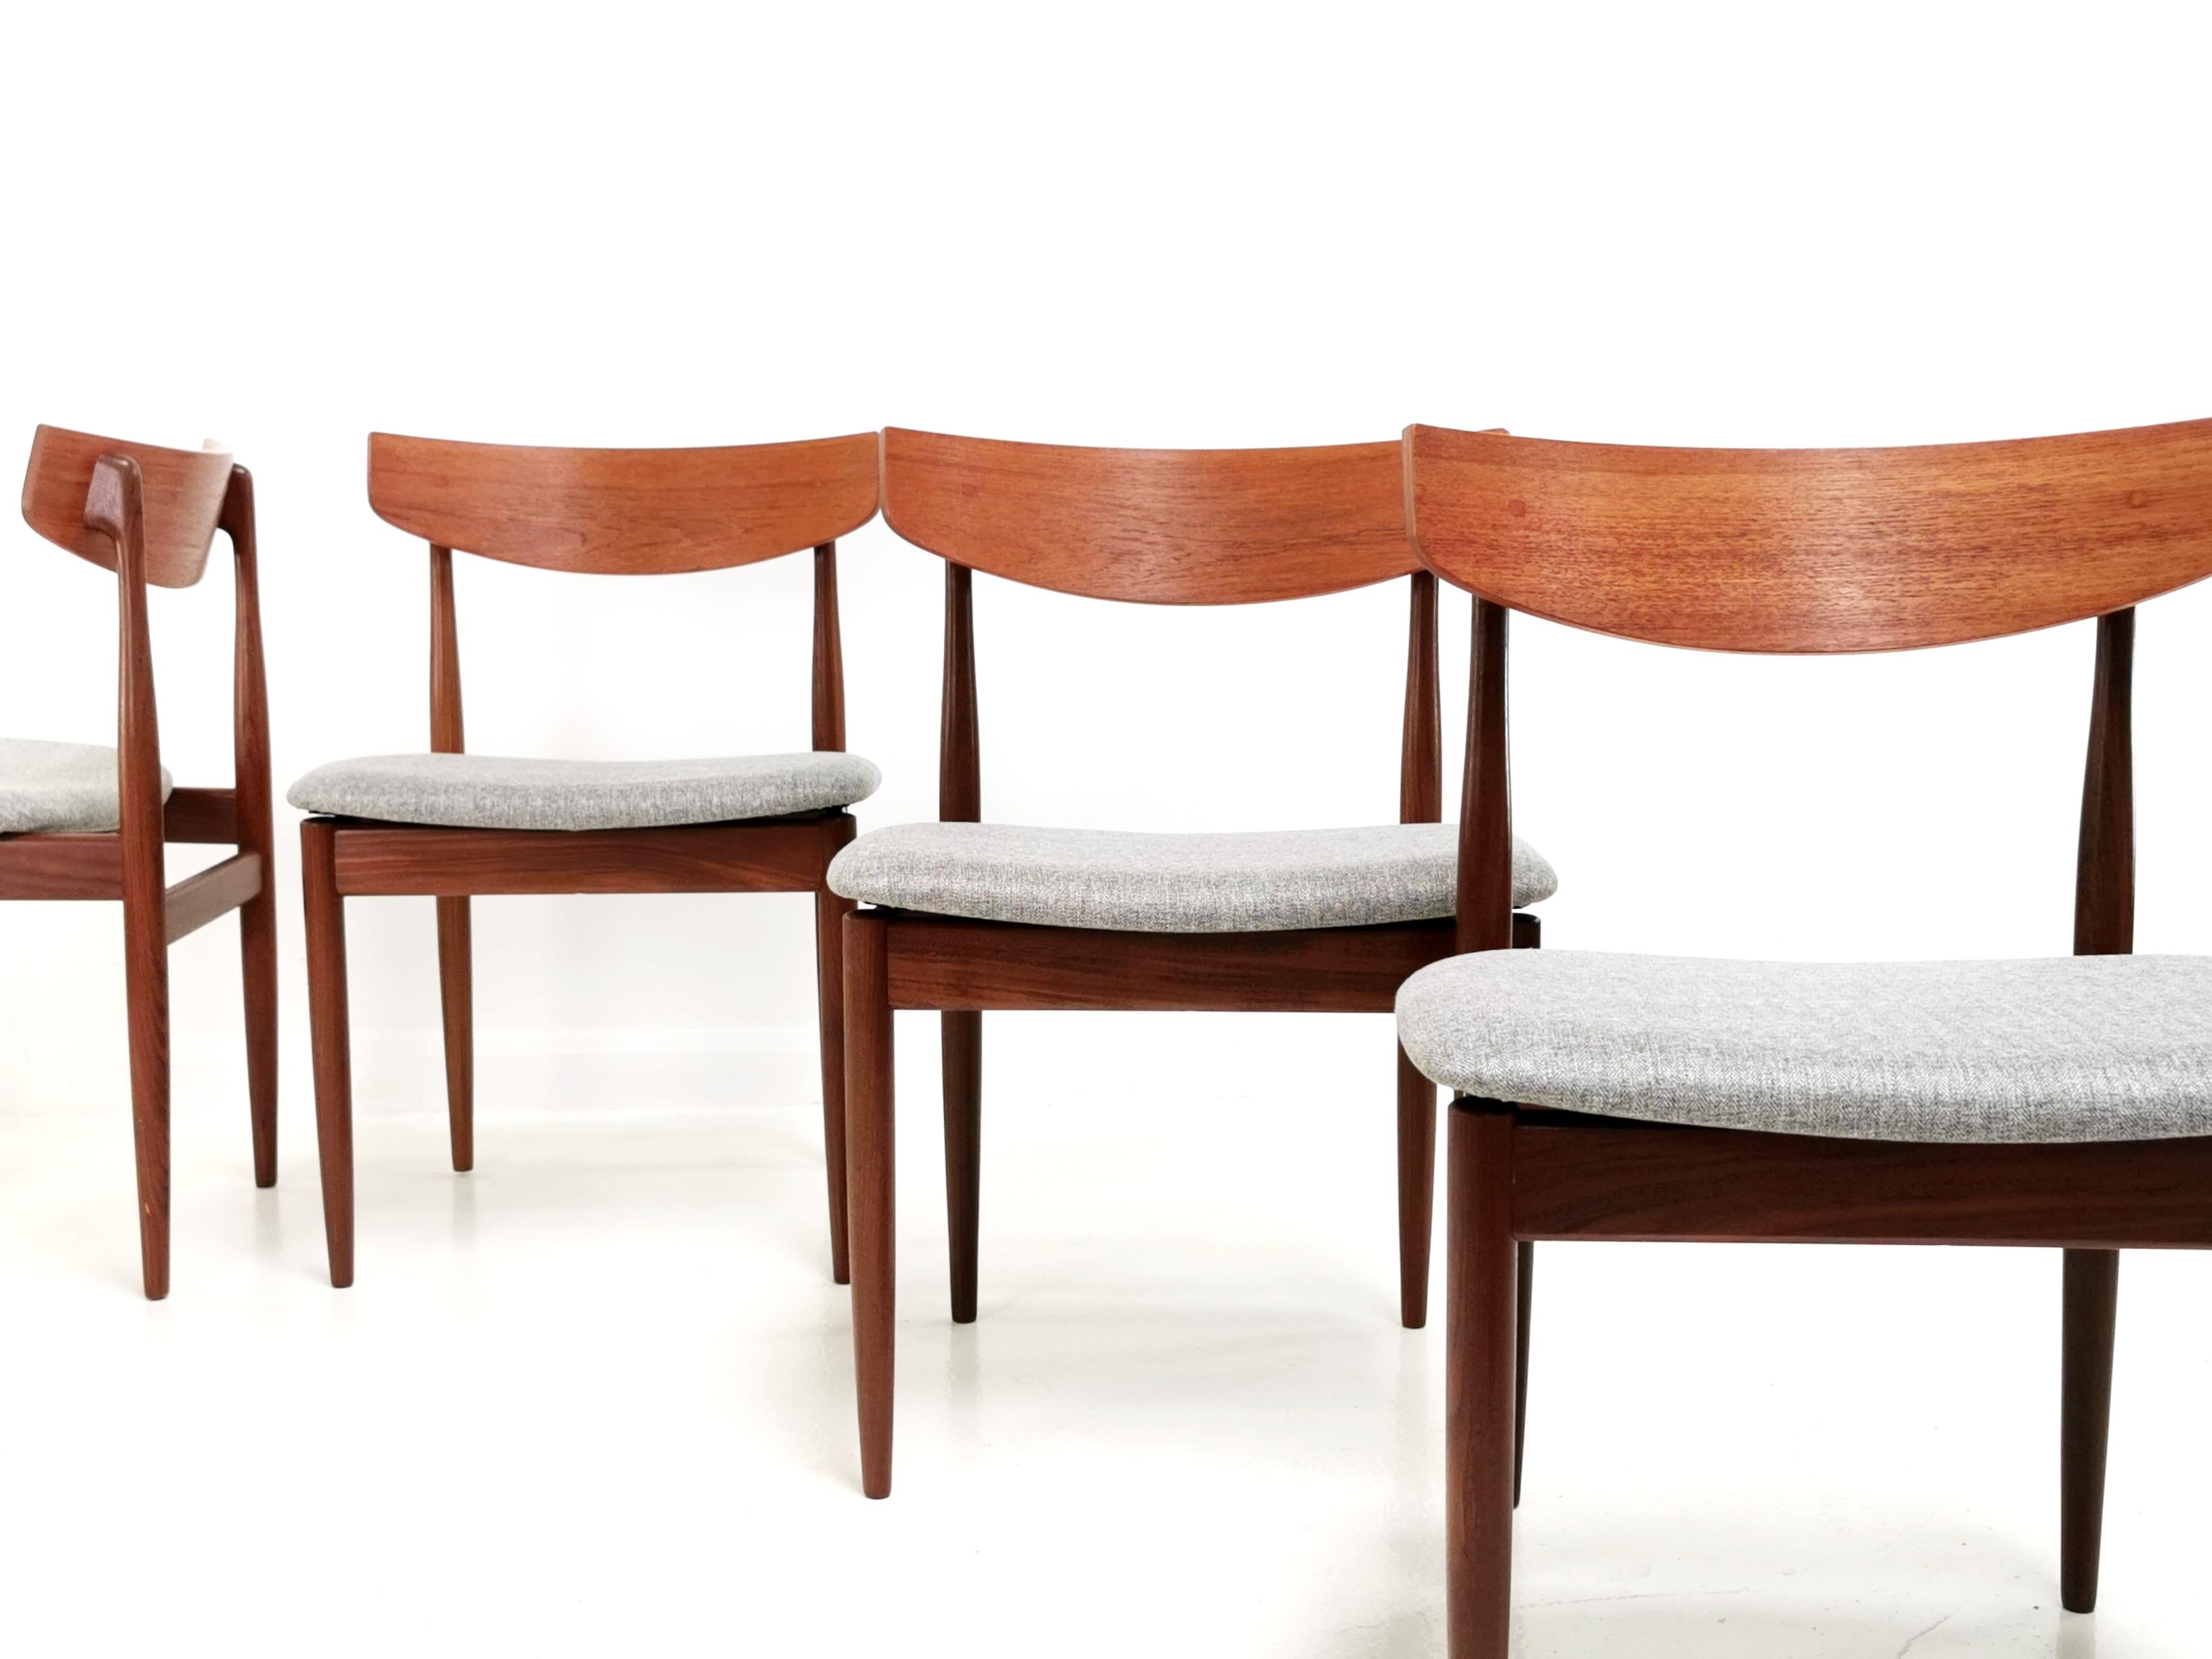 Kofod Larsen Teak G Plan Danish Dining Chairs 1960s Vintage Midcentury Set of 4 2